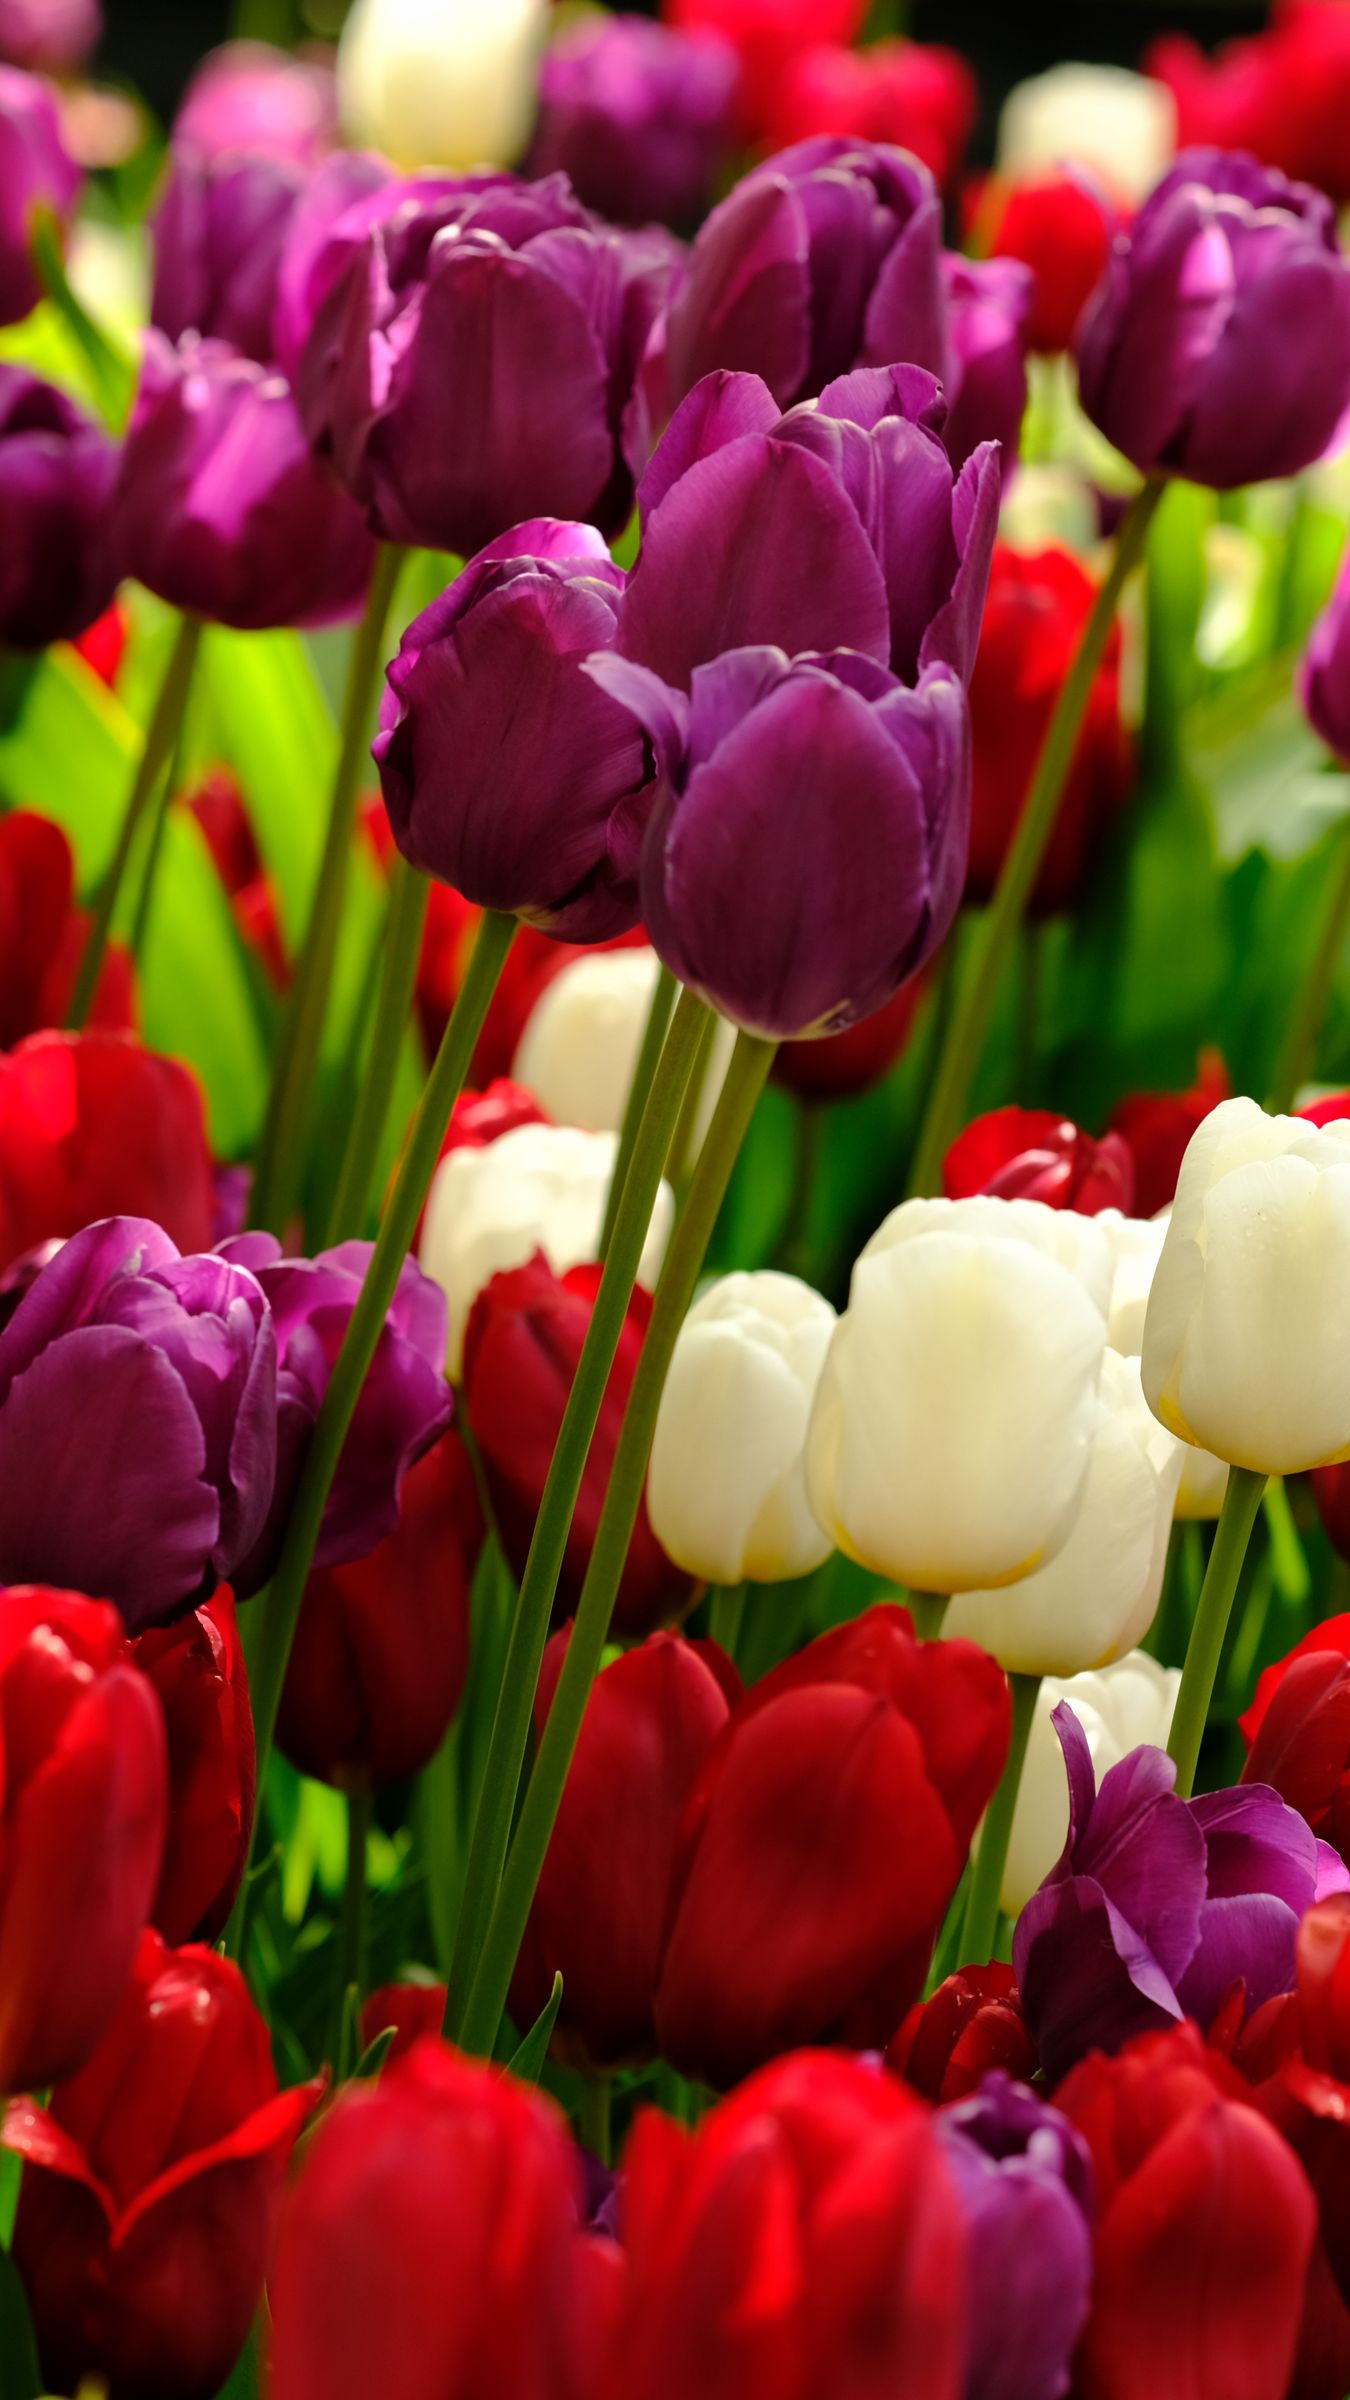 Tulips Wallpaper Images  Free Download on Freepik